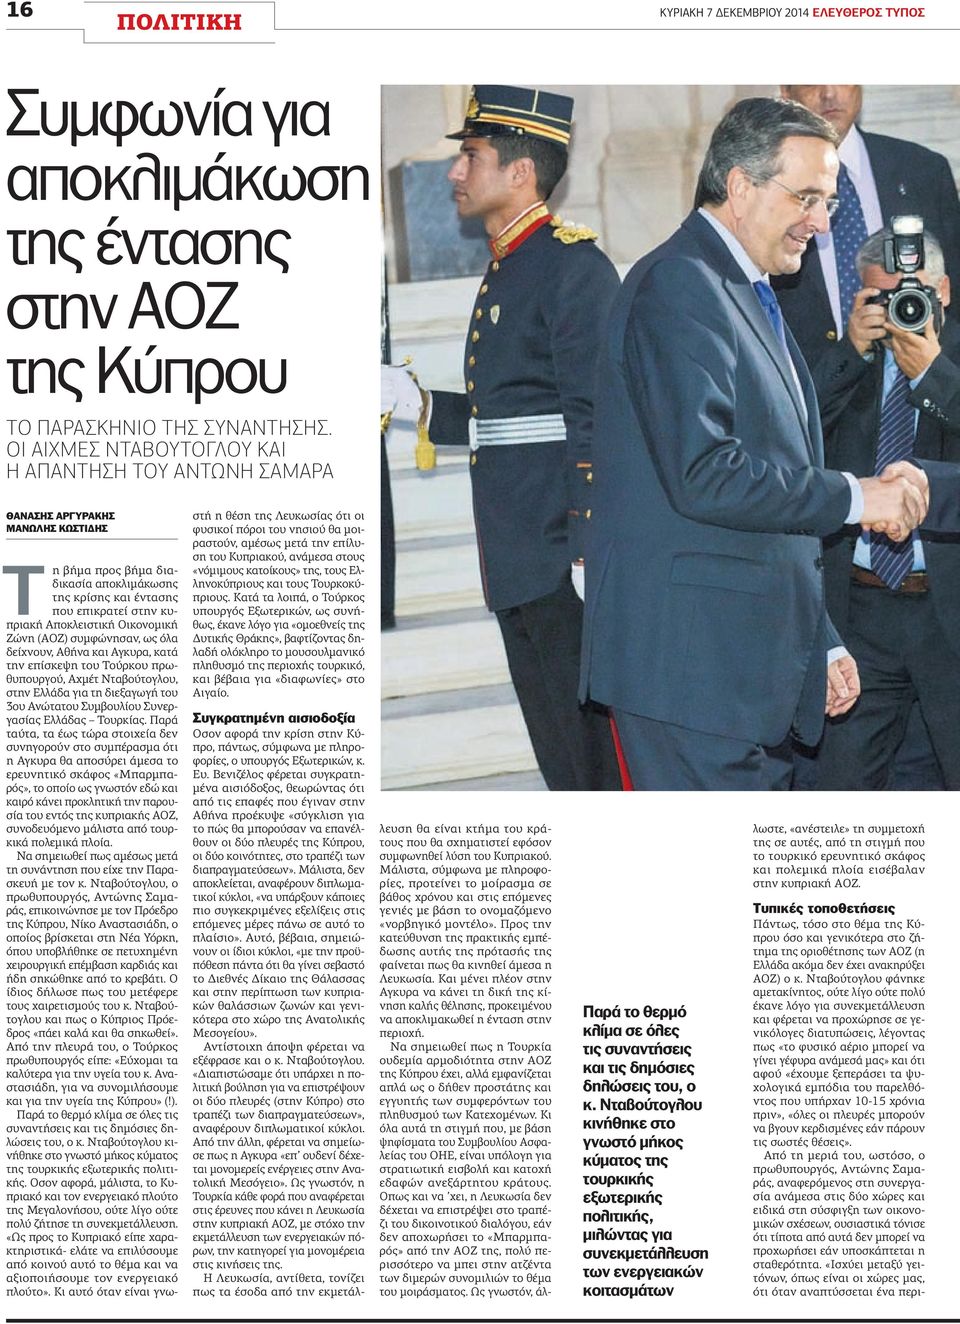 Οικονομική Ζώνη (ΑΟΖ) συμφώνησαν, ως όλα δείχνουν, Αθήνα και Αγκυρα, κατά την επίσκεψη του Τούρκου πρωθυπουργού, Αχμέτ Νταβούτογλου, στην Ελλάδα για τη διεξαγωγή του 3ου Ανώτατου Συμβουλίου